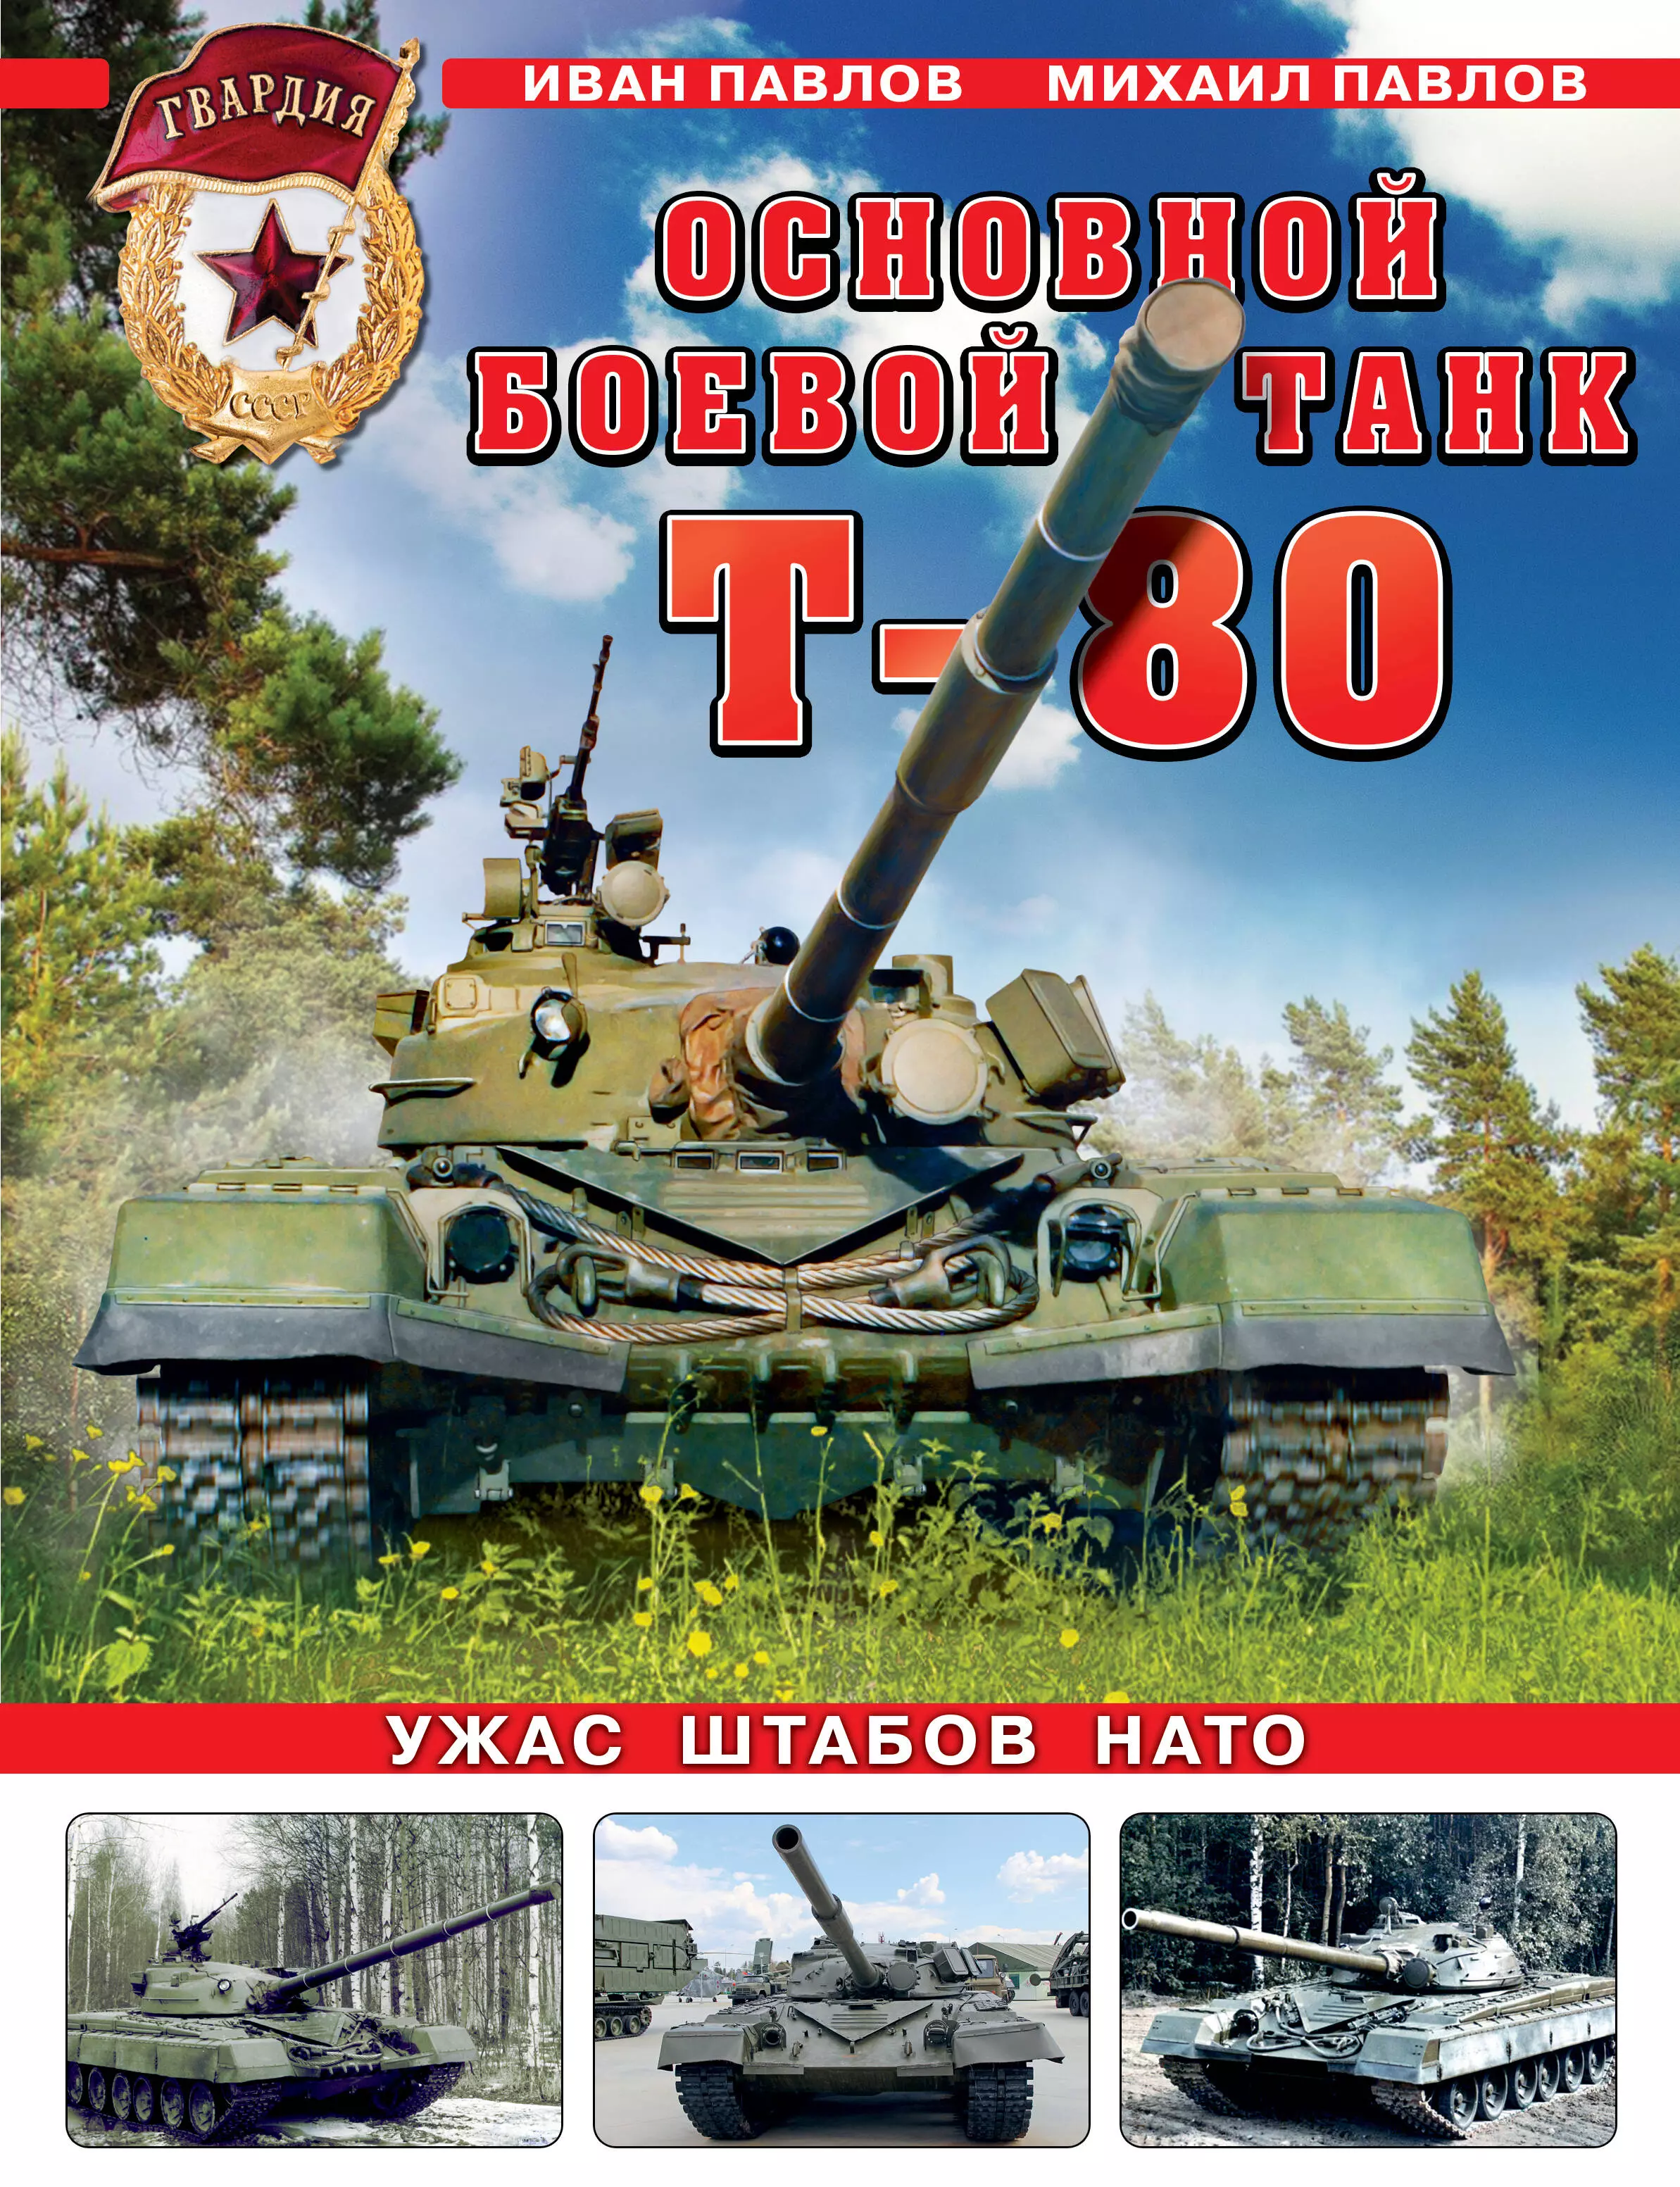 Павлов Михаил Владимирович - Основной боевой танк Т-80. Ужас штабов НАТО